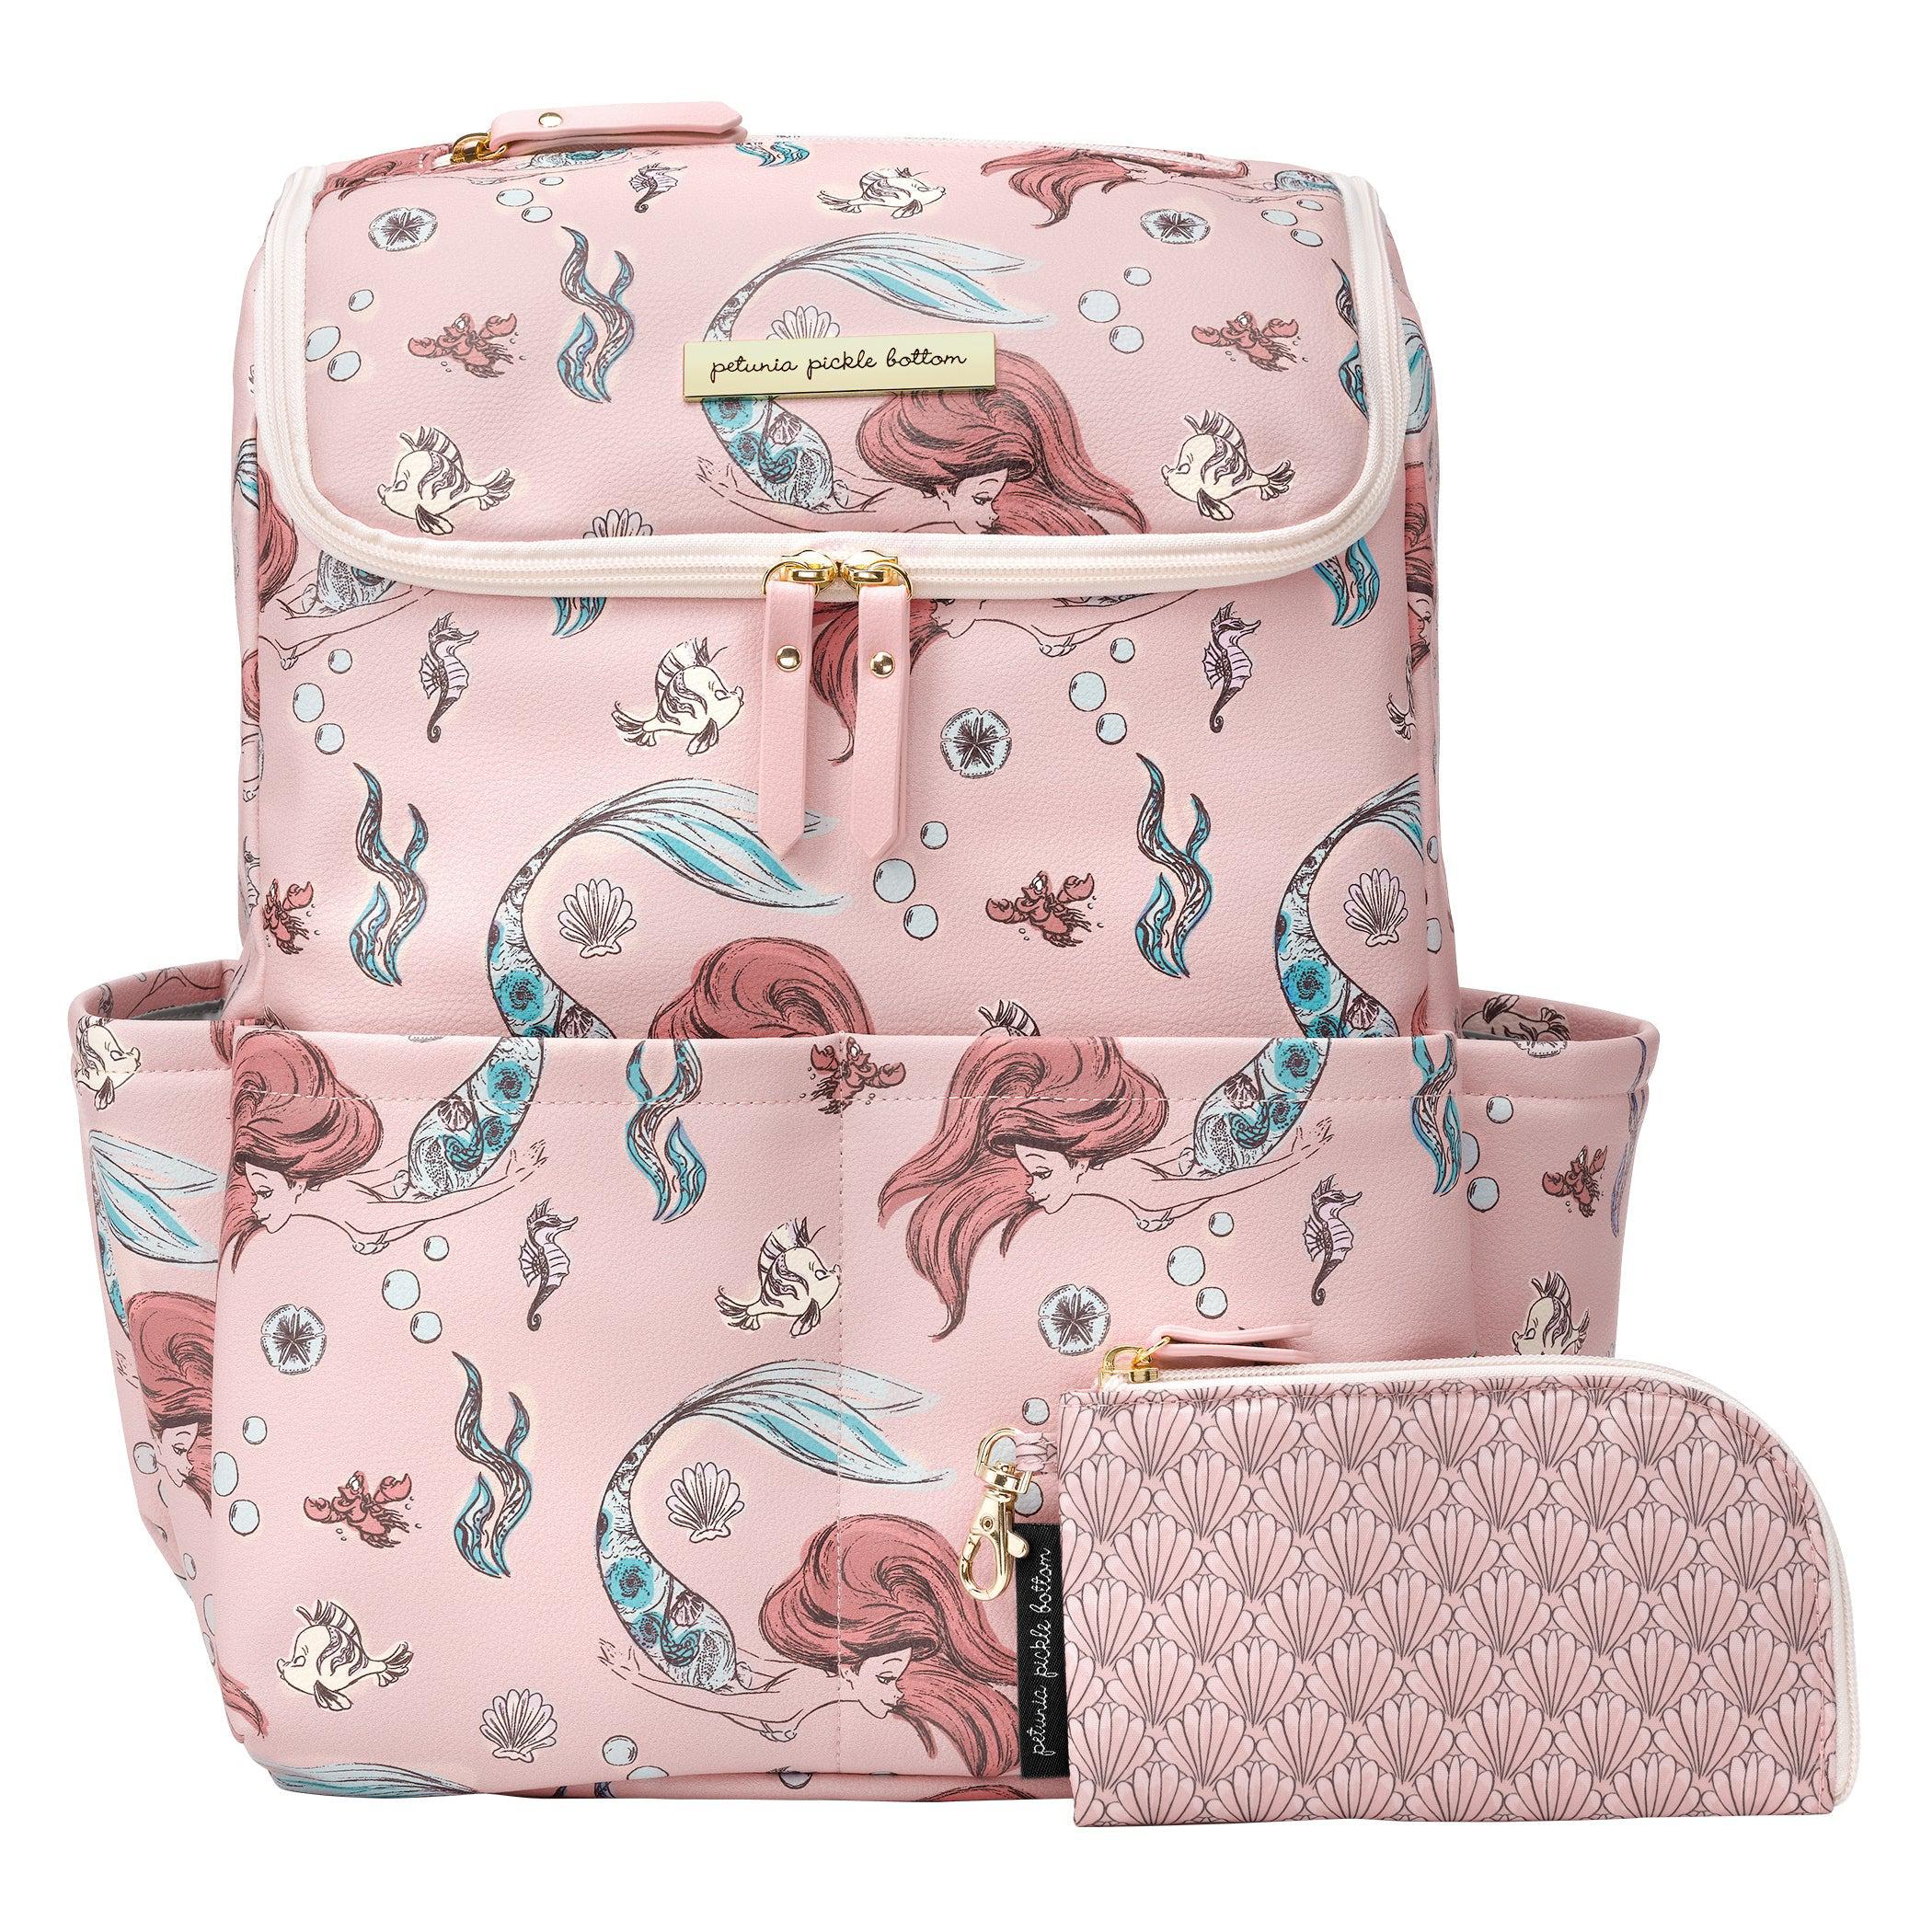 Method Backpack Diaper Bag in Disney's Little Mermaid – Petunia Pickle  Bottom